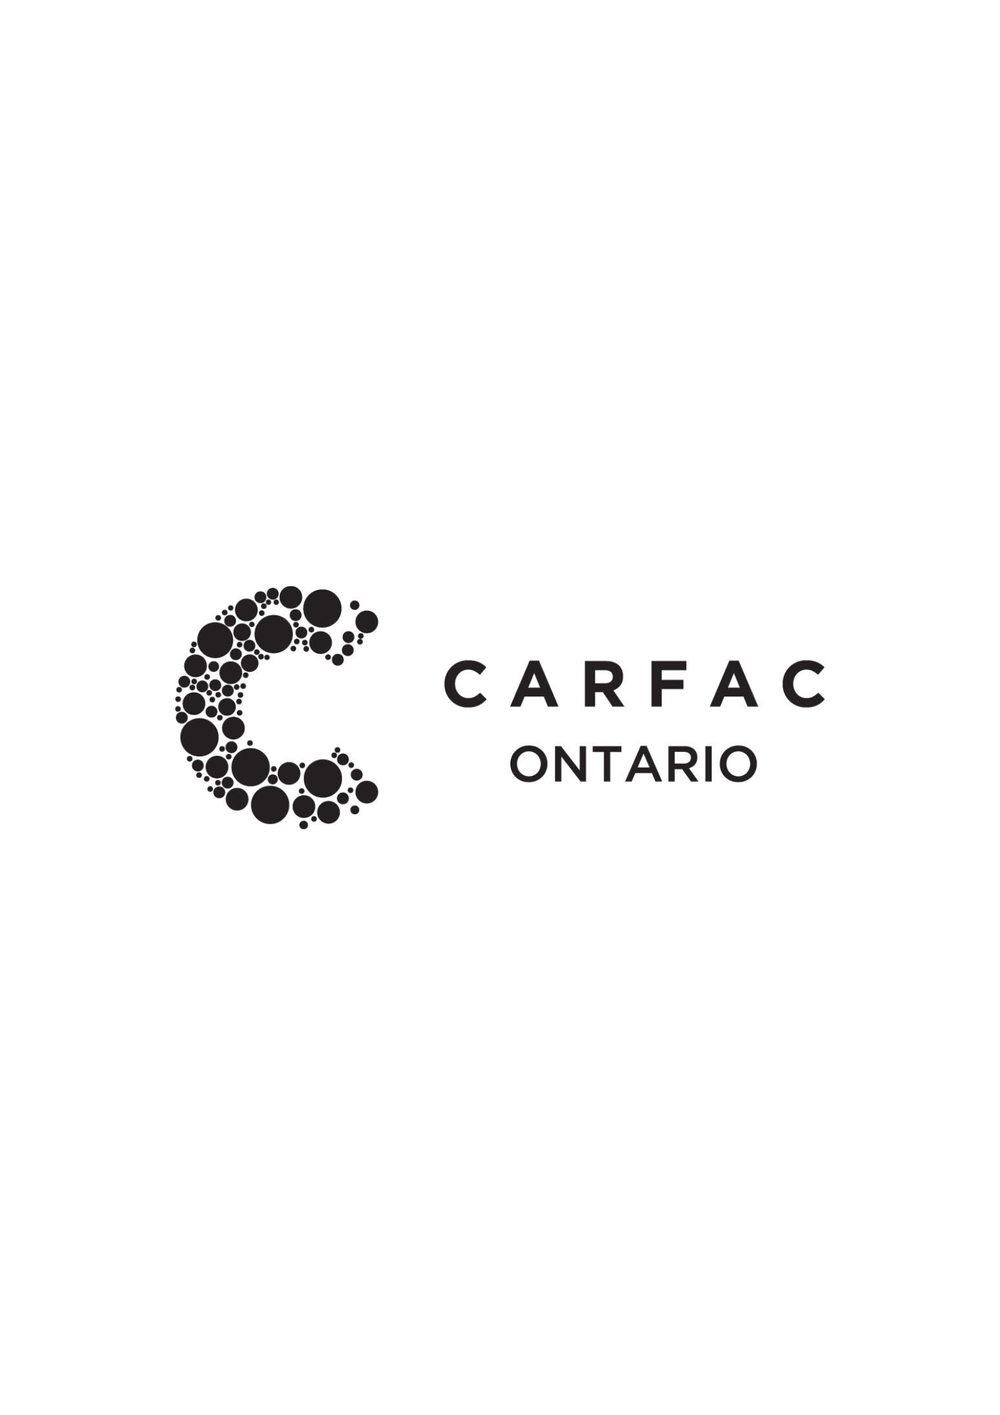 CARFAC Ontario (Toronto, ON) post image